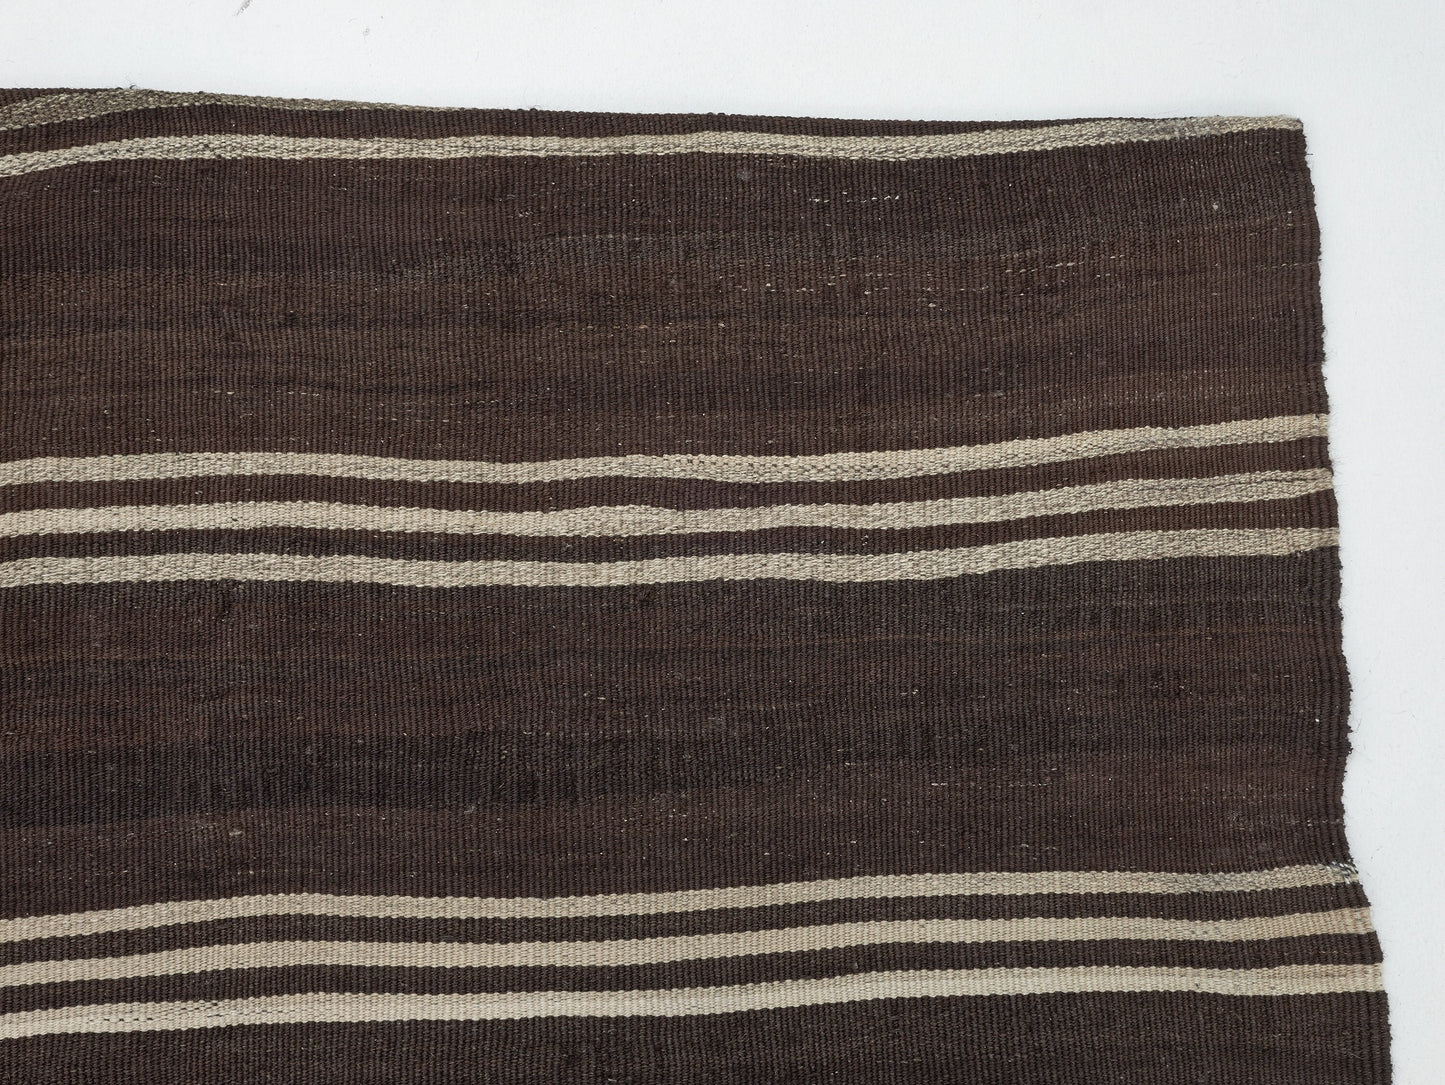 Turkish Kilim, Area Flat Weave Kilim Rug, Vintage Kilim, Turkish Kilim Rug, Handmade Rug, Entryway Rug, Rug Kilim, Kilim Rug 7x10, 11499